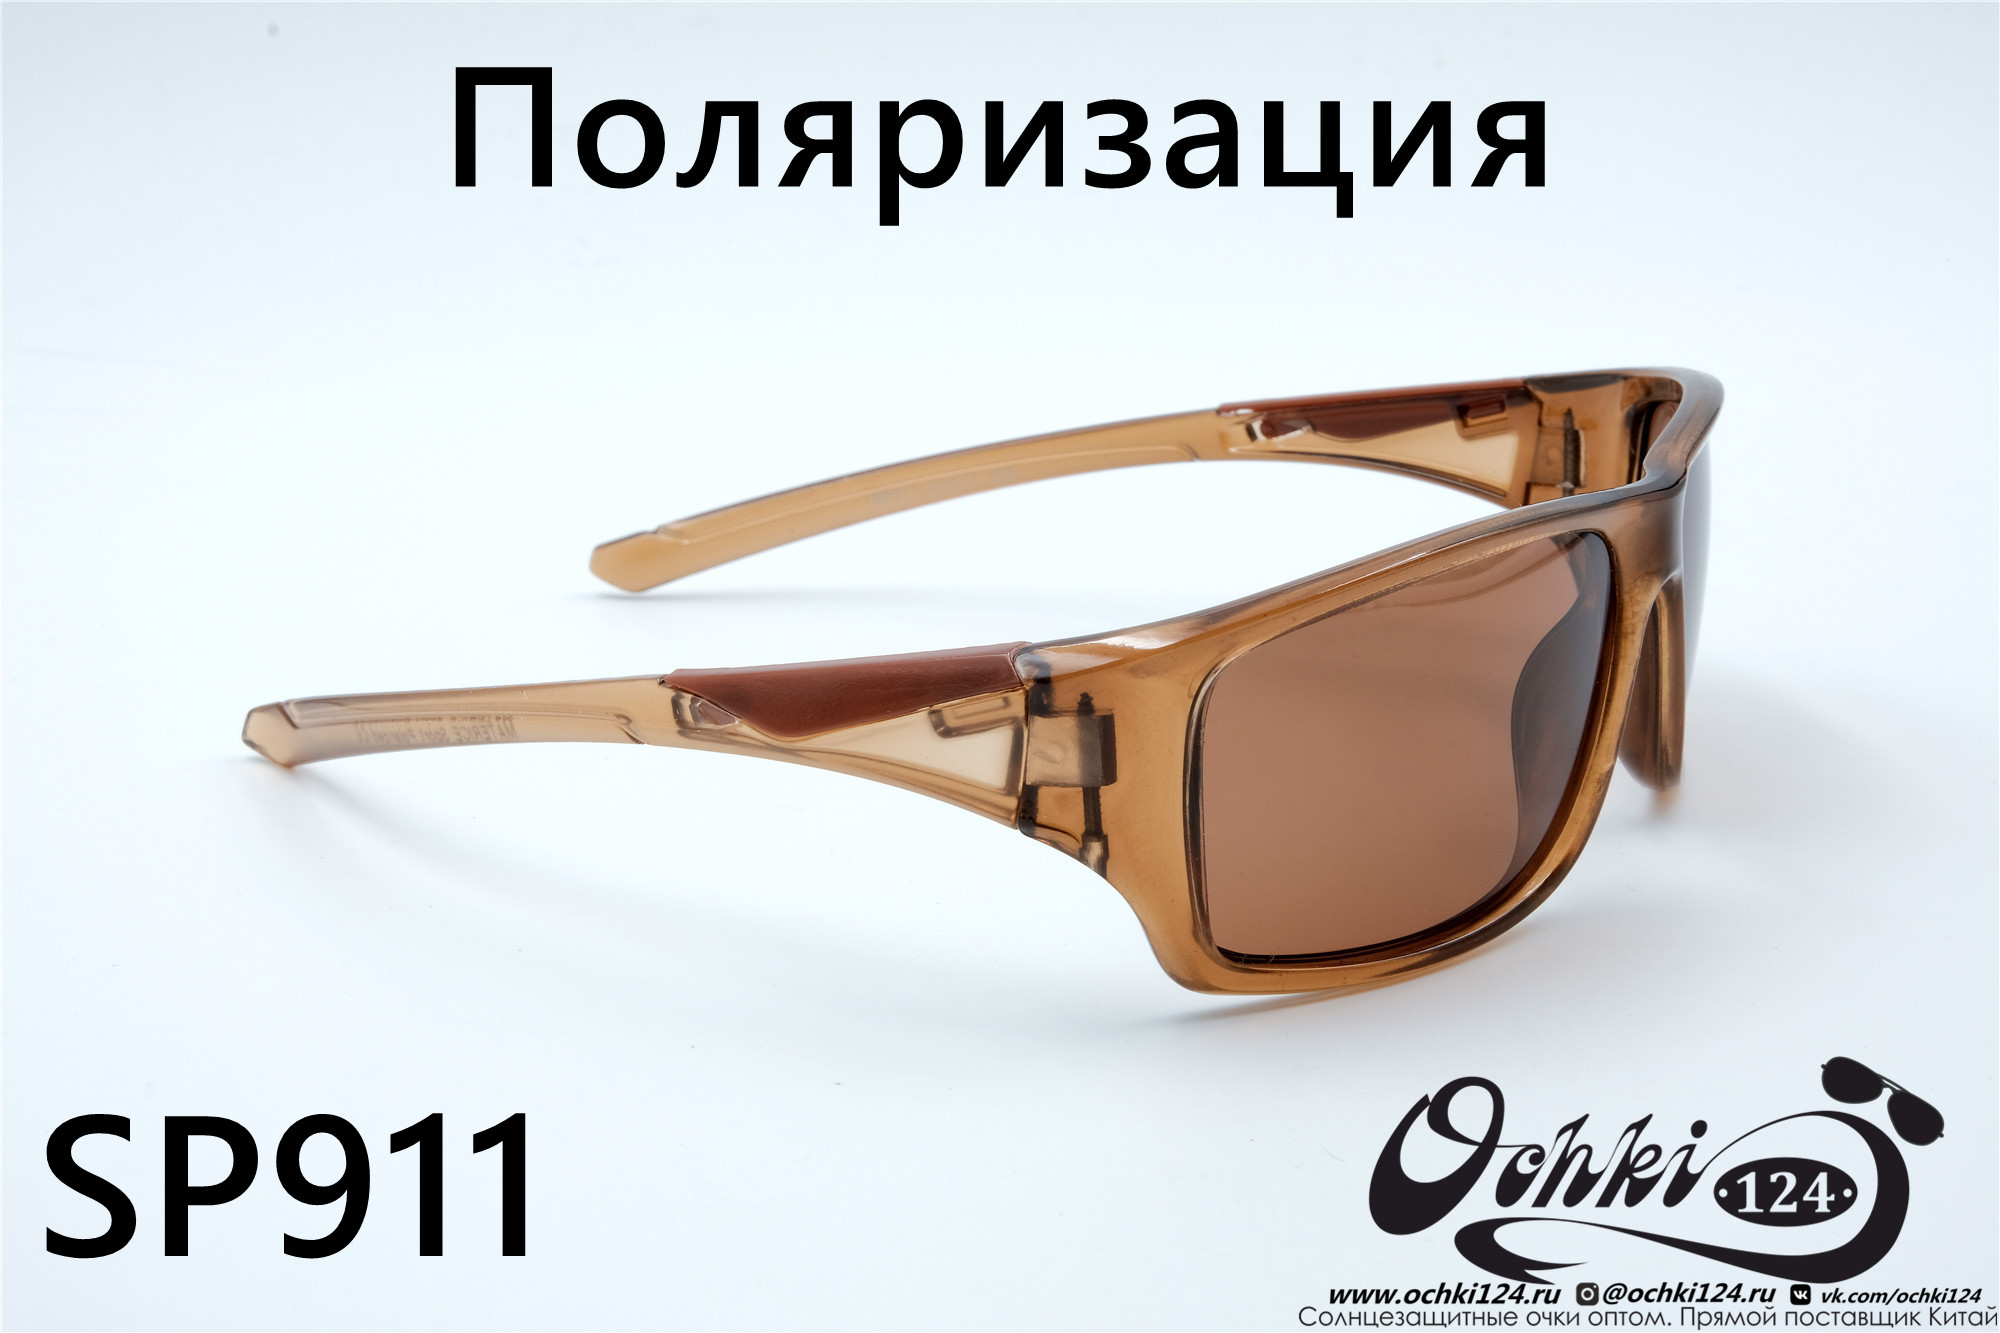  Солнцезащитные очки картинка 2022 Мужские Поляризованные Спорт Materice SP911-3 